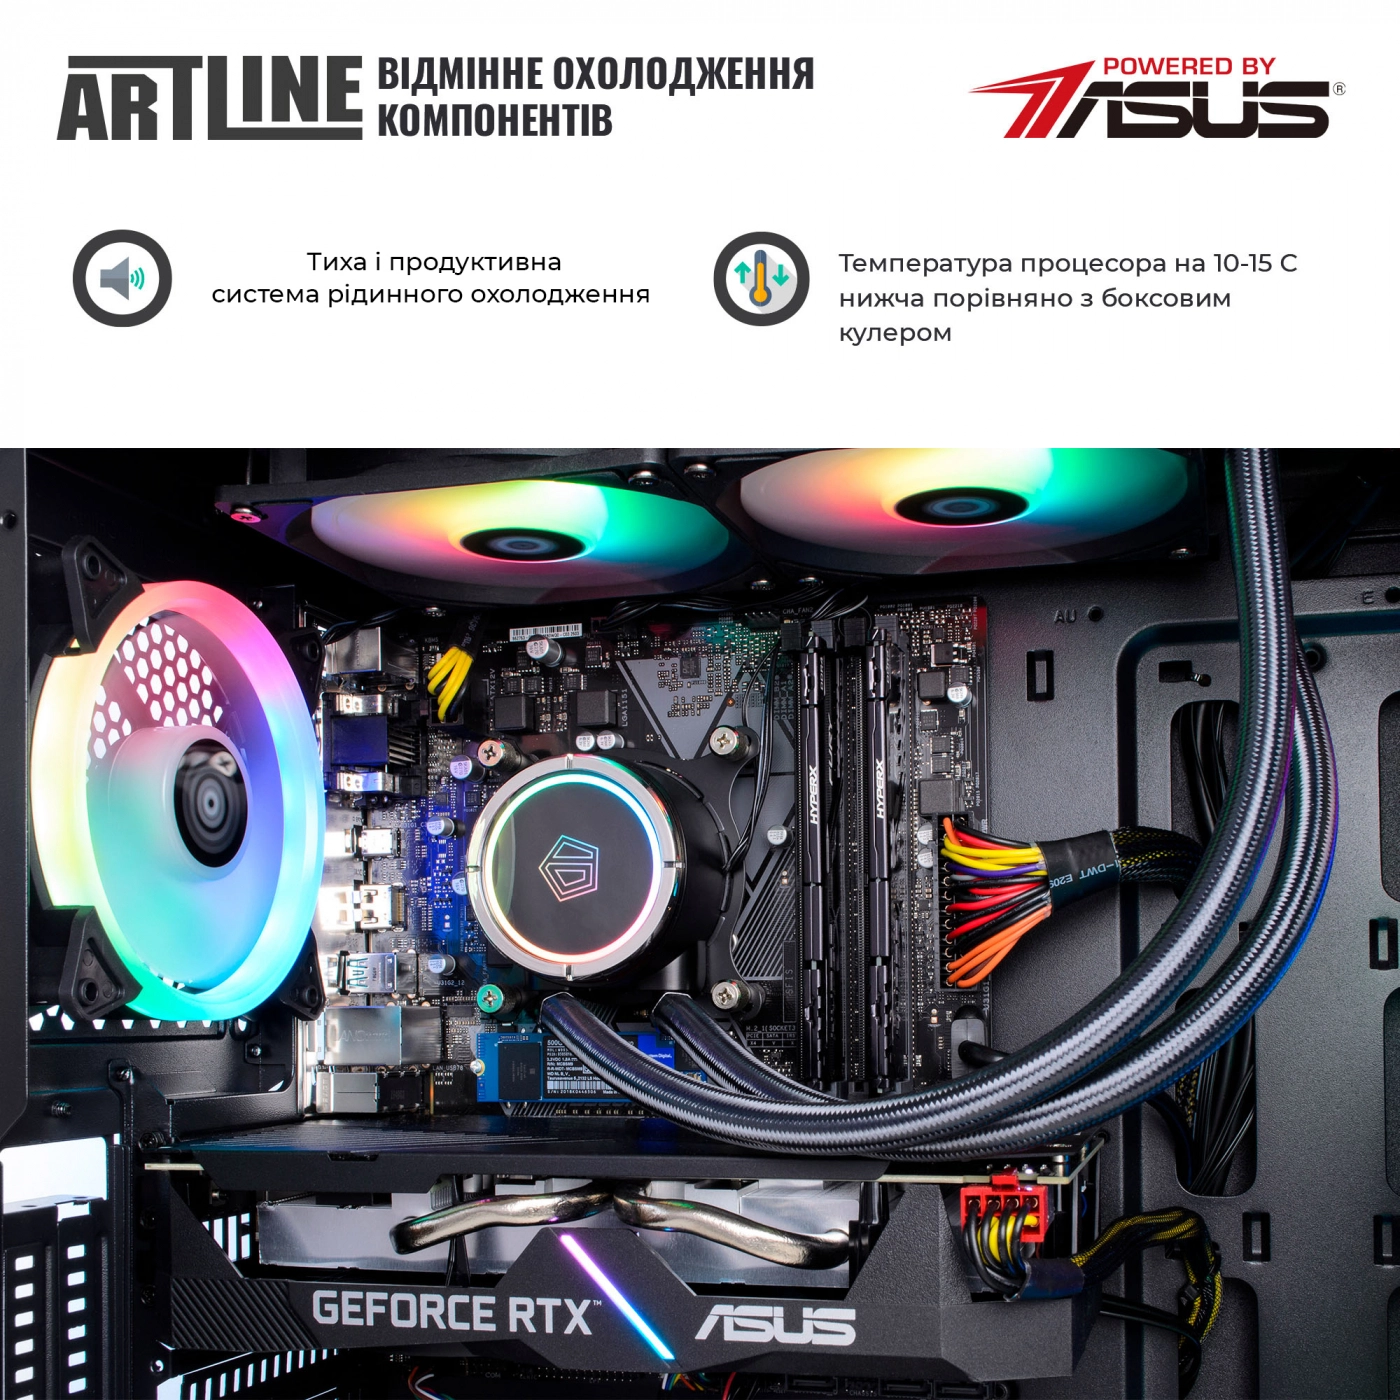 Купить Компьютер ARTLINE Gaming X79v40 - фото 4